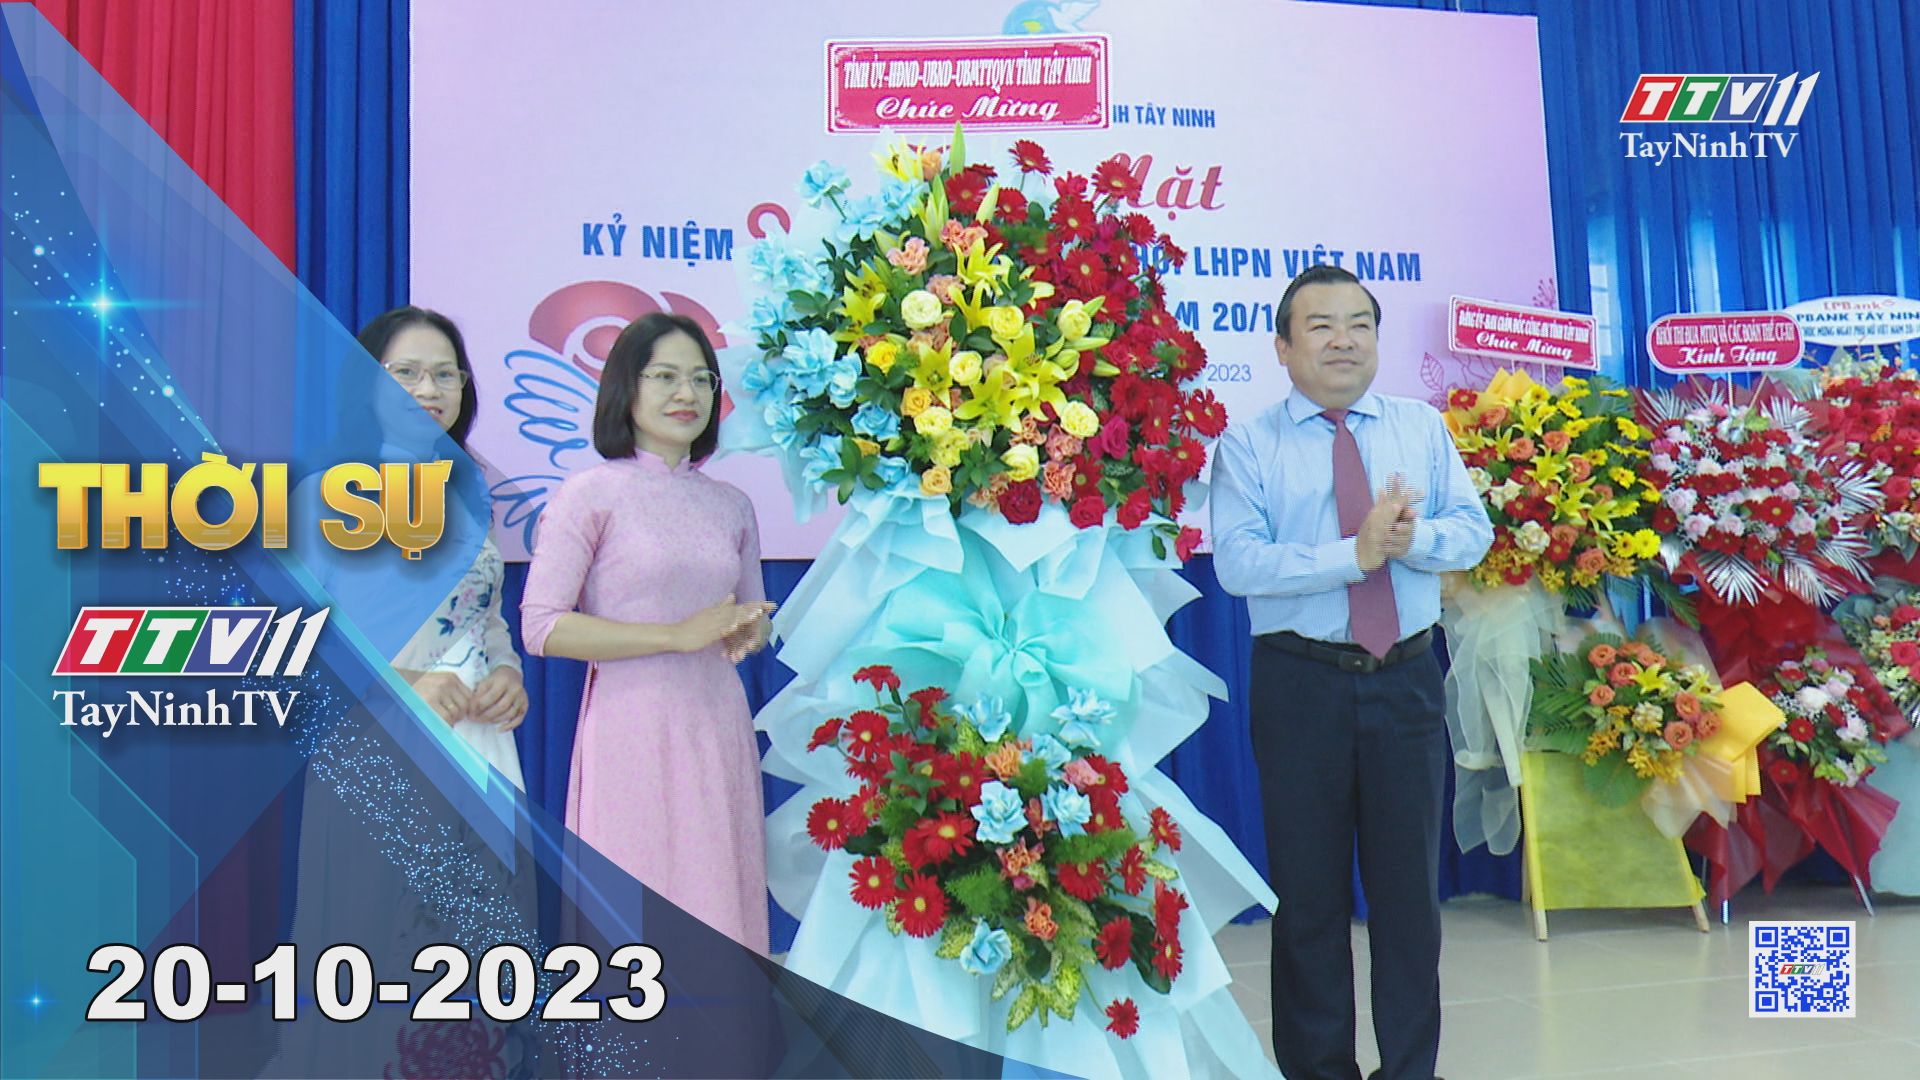 Thời sự Tây Ninh 20-10-2023 | Tin tức hôm nay | TayNinhTV